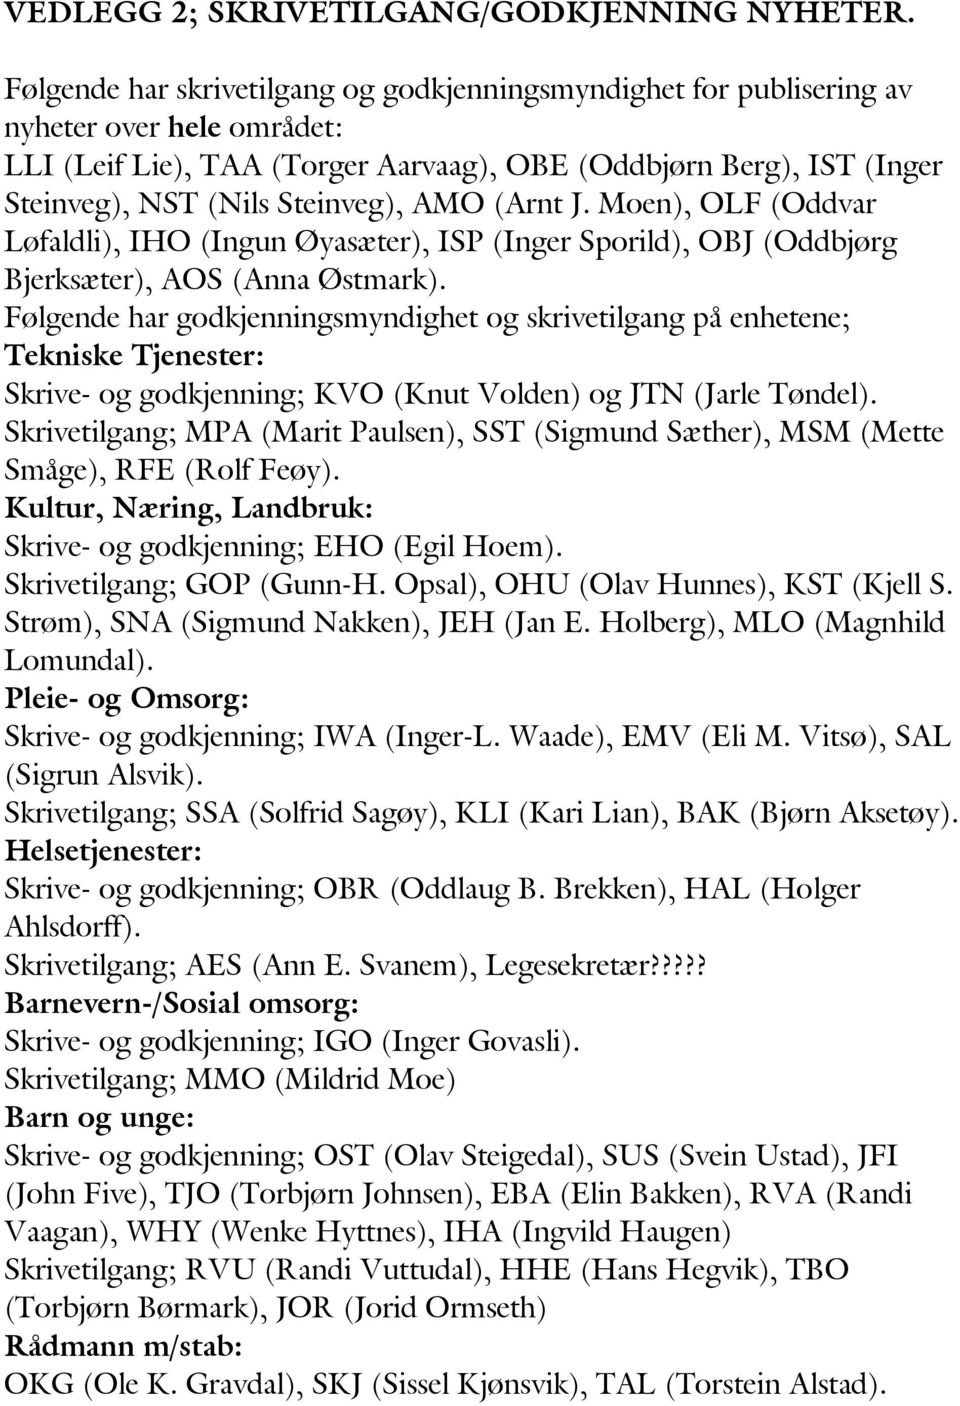 AMO (Arnt J. Moen), OLF (Oddvar Løfaldli), IHO (Ingun Øyasæter), ISP (Inger Sporild), OBJ (Oddbjørg Bjerksæter), AOS (Anna Østmark).